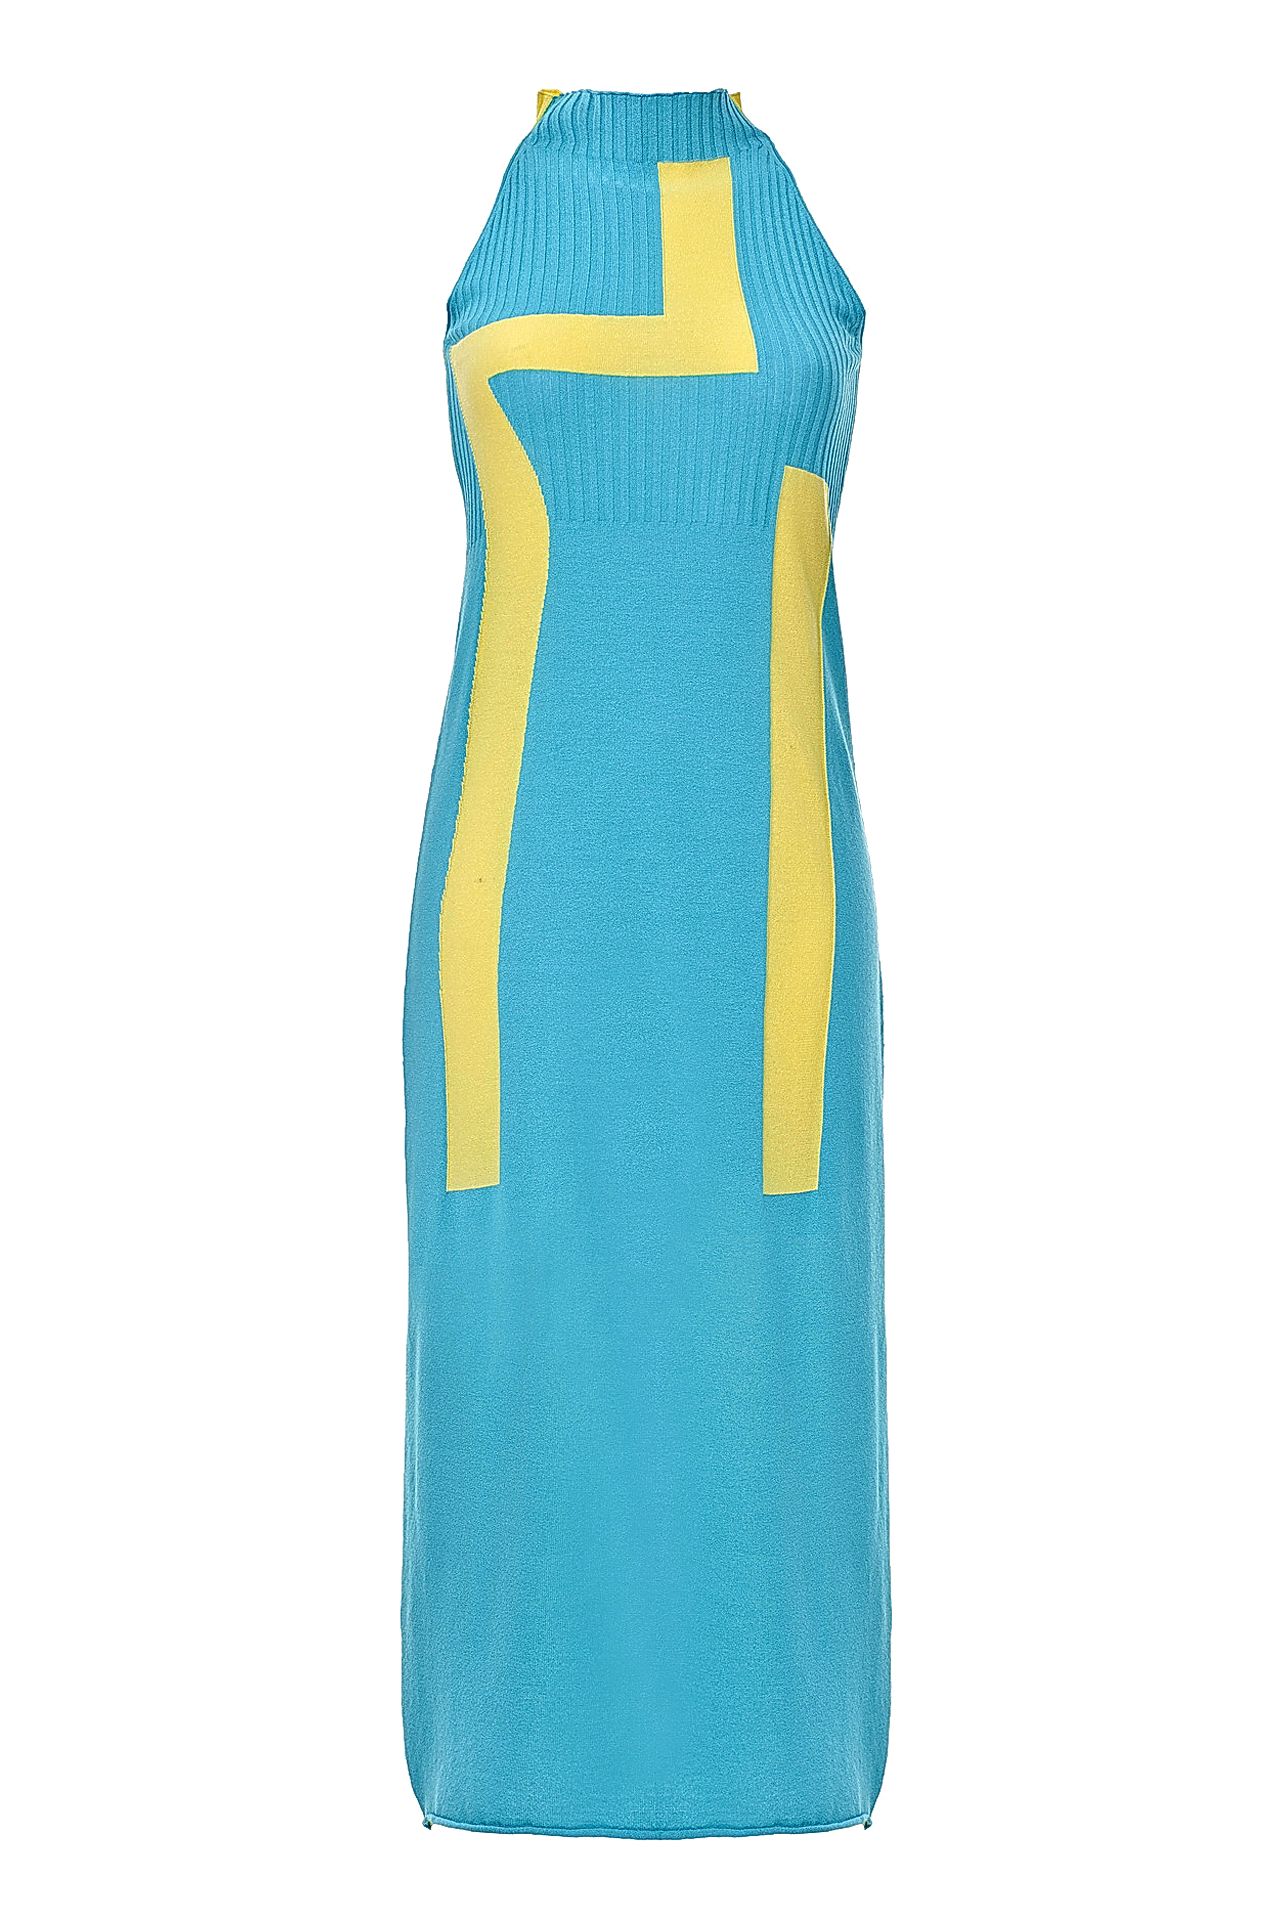 Одежда женская Платье TENAX (A0215/14.2). Купить за 6450 руб.